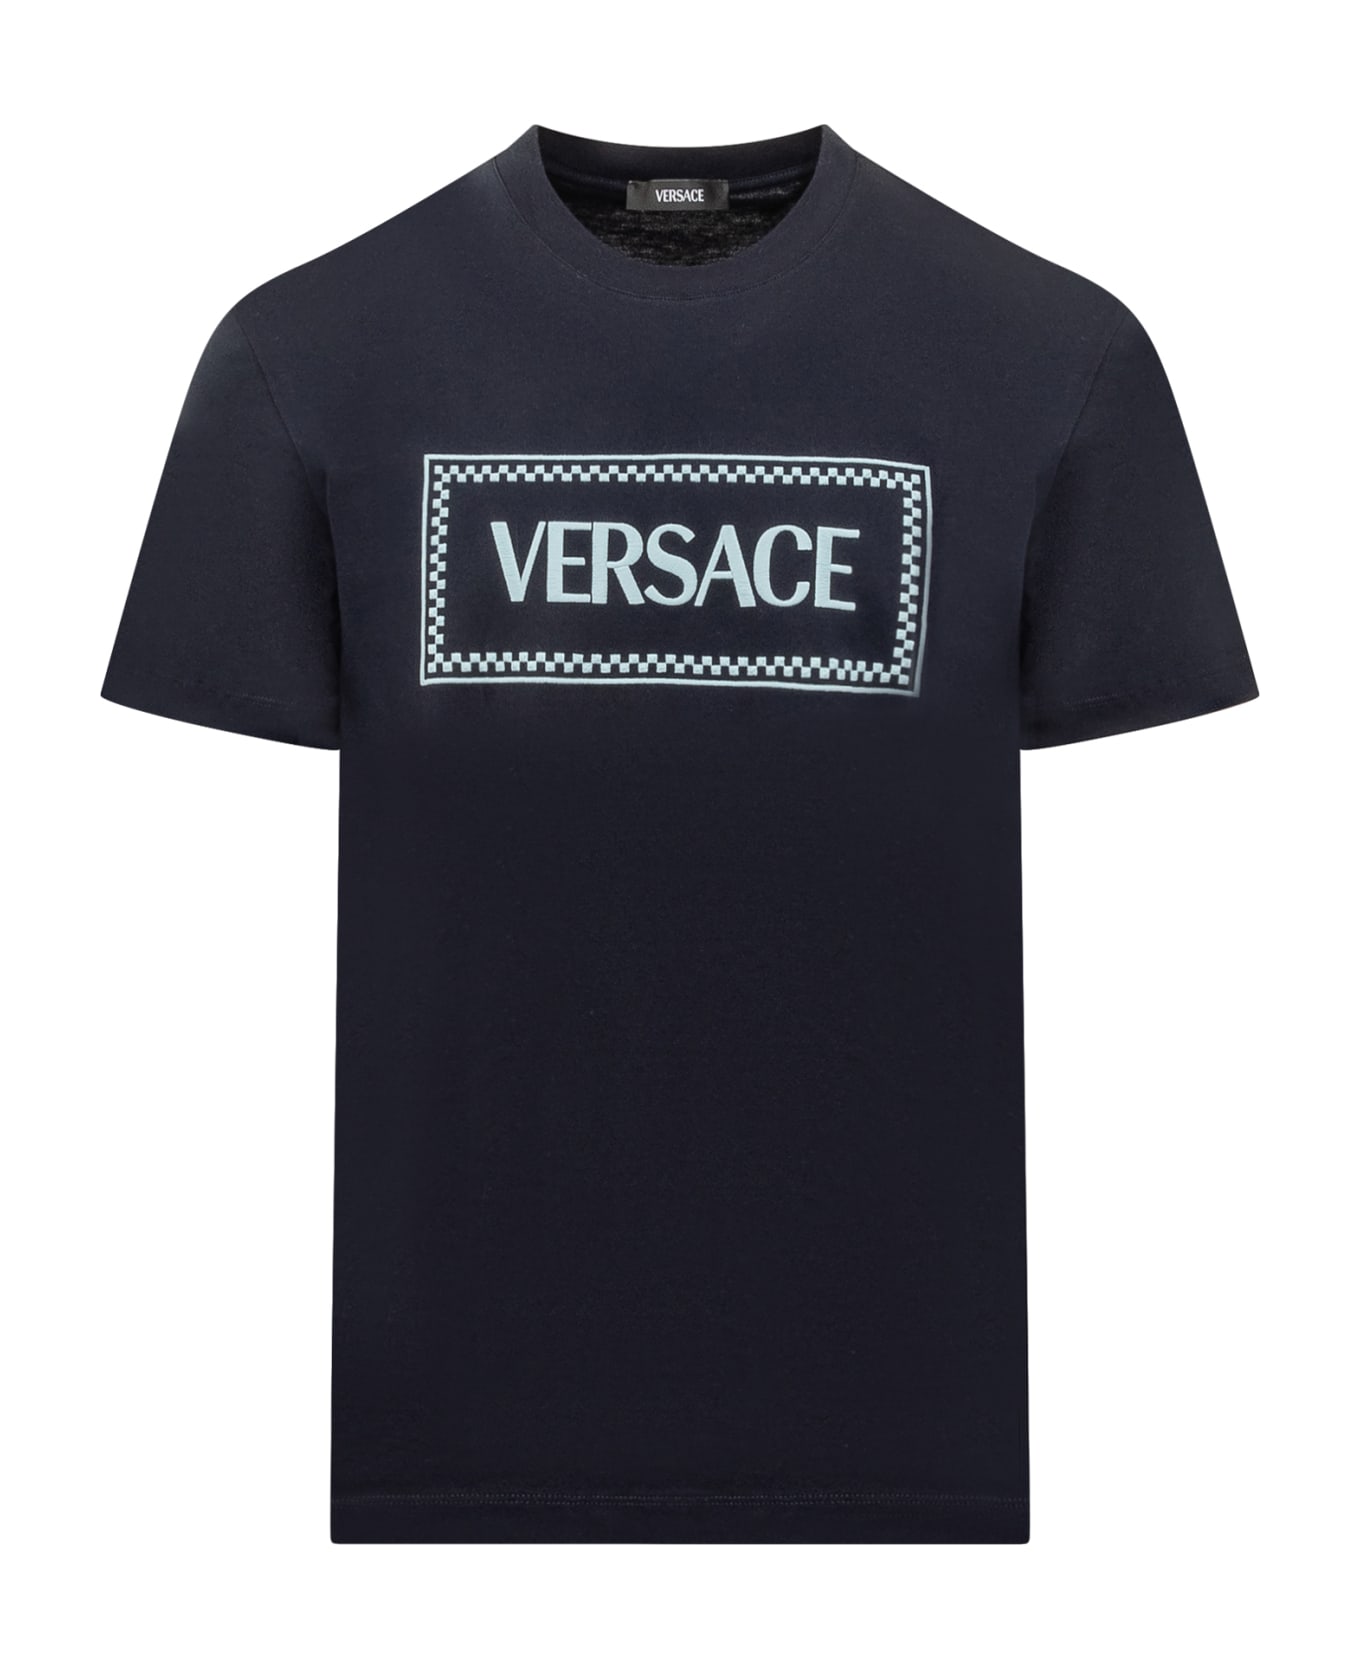 Versace T-shirt - NAVY BLUE (Blue)